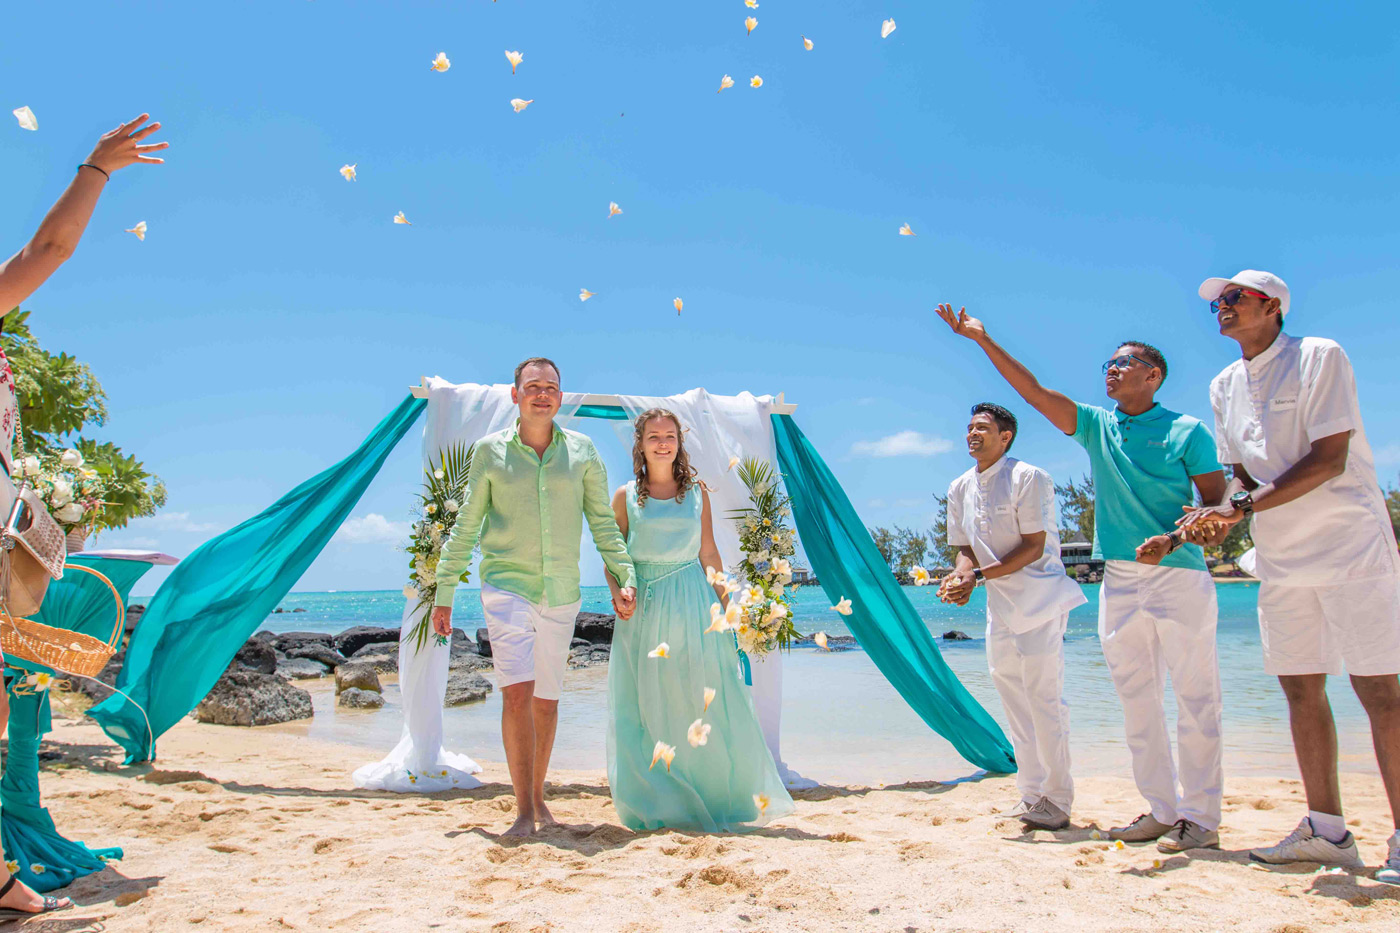 Свадьба на Маврикии: в маленьком раю